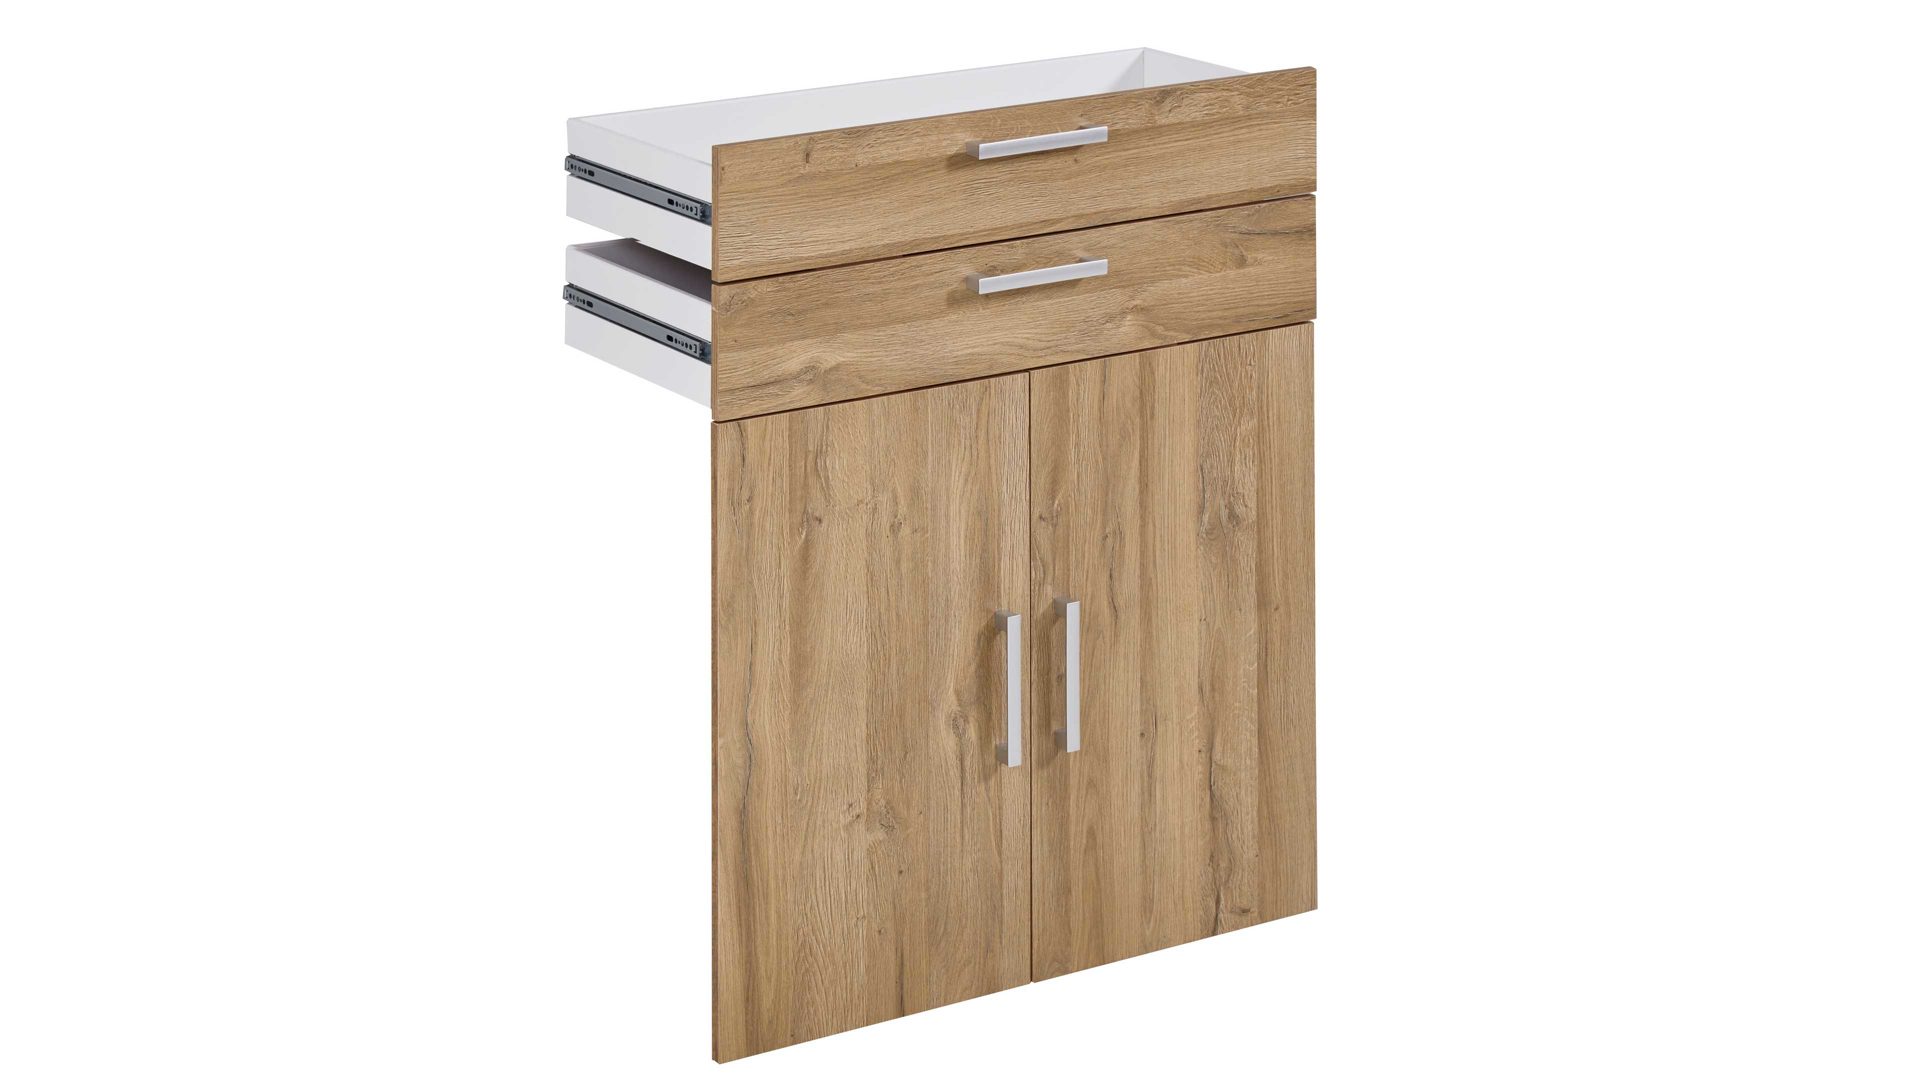 Türen-Set Fmd furniture aus Holz in Holzfarben Türen- und Schubladen-Set Calvia 13 Alteiche – zwei Türen, zwei Schubladen